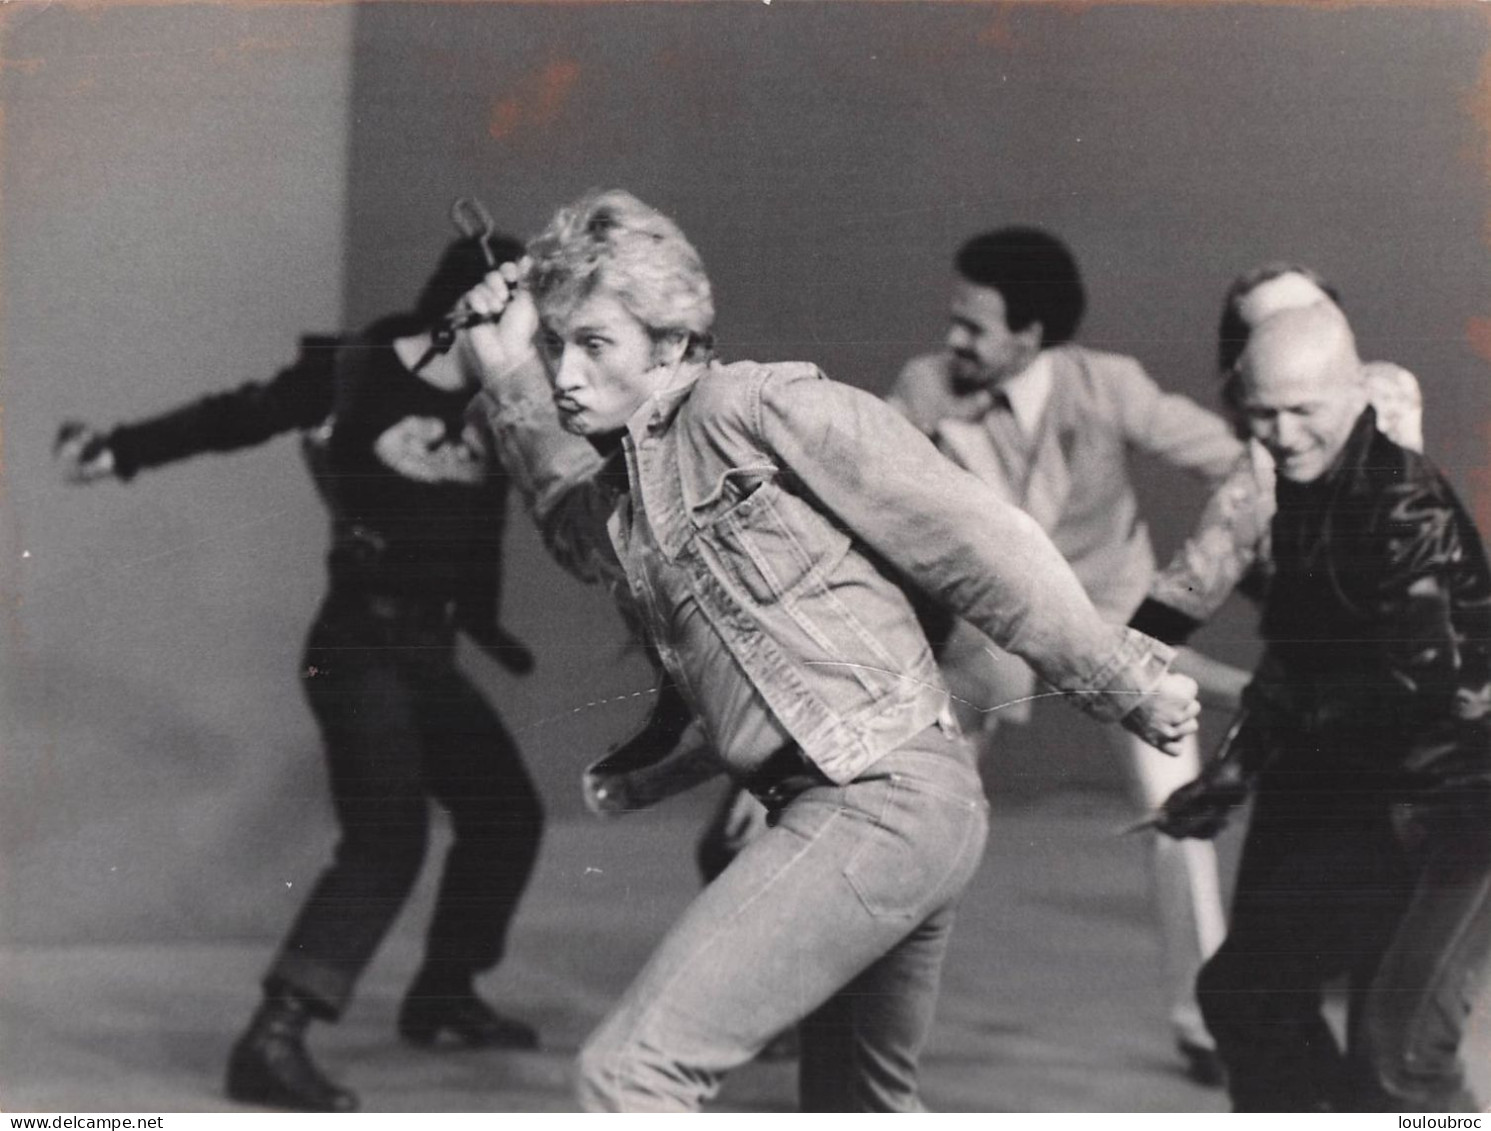 JOHNNY HALLYDAY 1975 DANS SA PERIODE BLOUSON NOIR AUX BUTTES CHAUMONT PHOTO DE PRESSE  24X18CM - Famous People